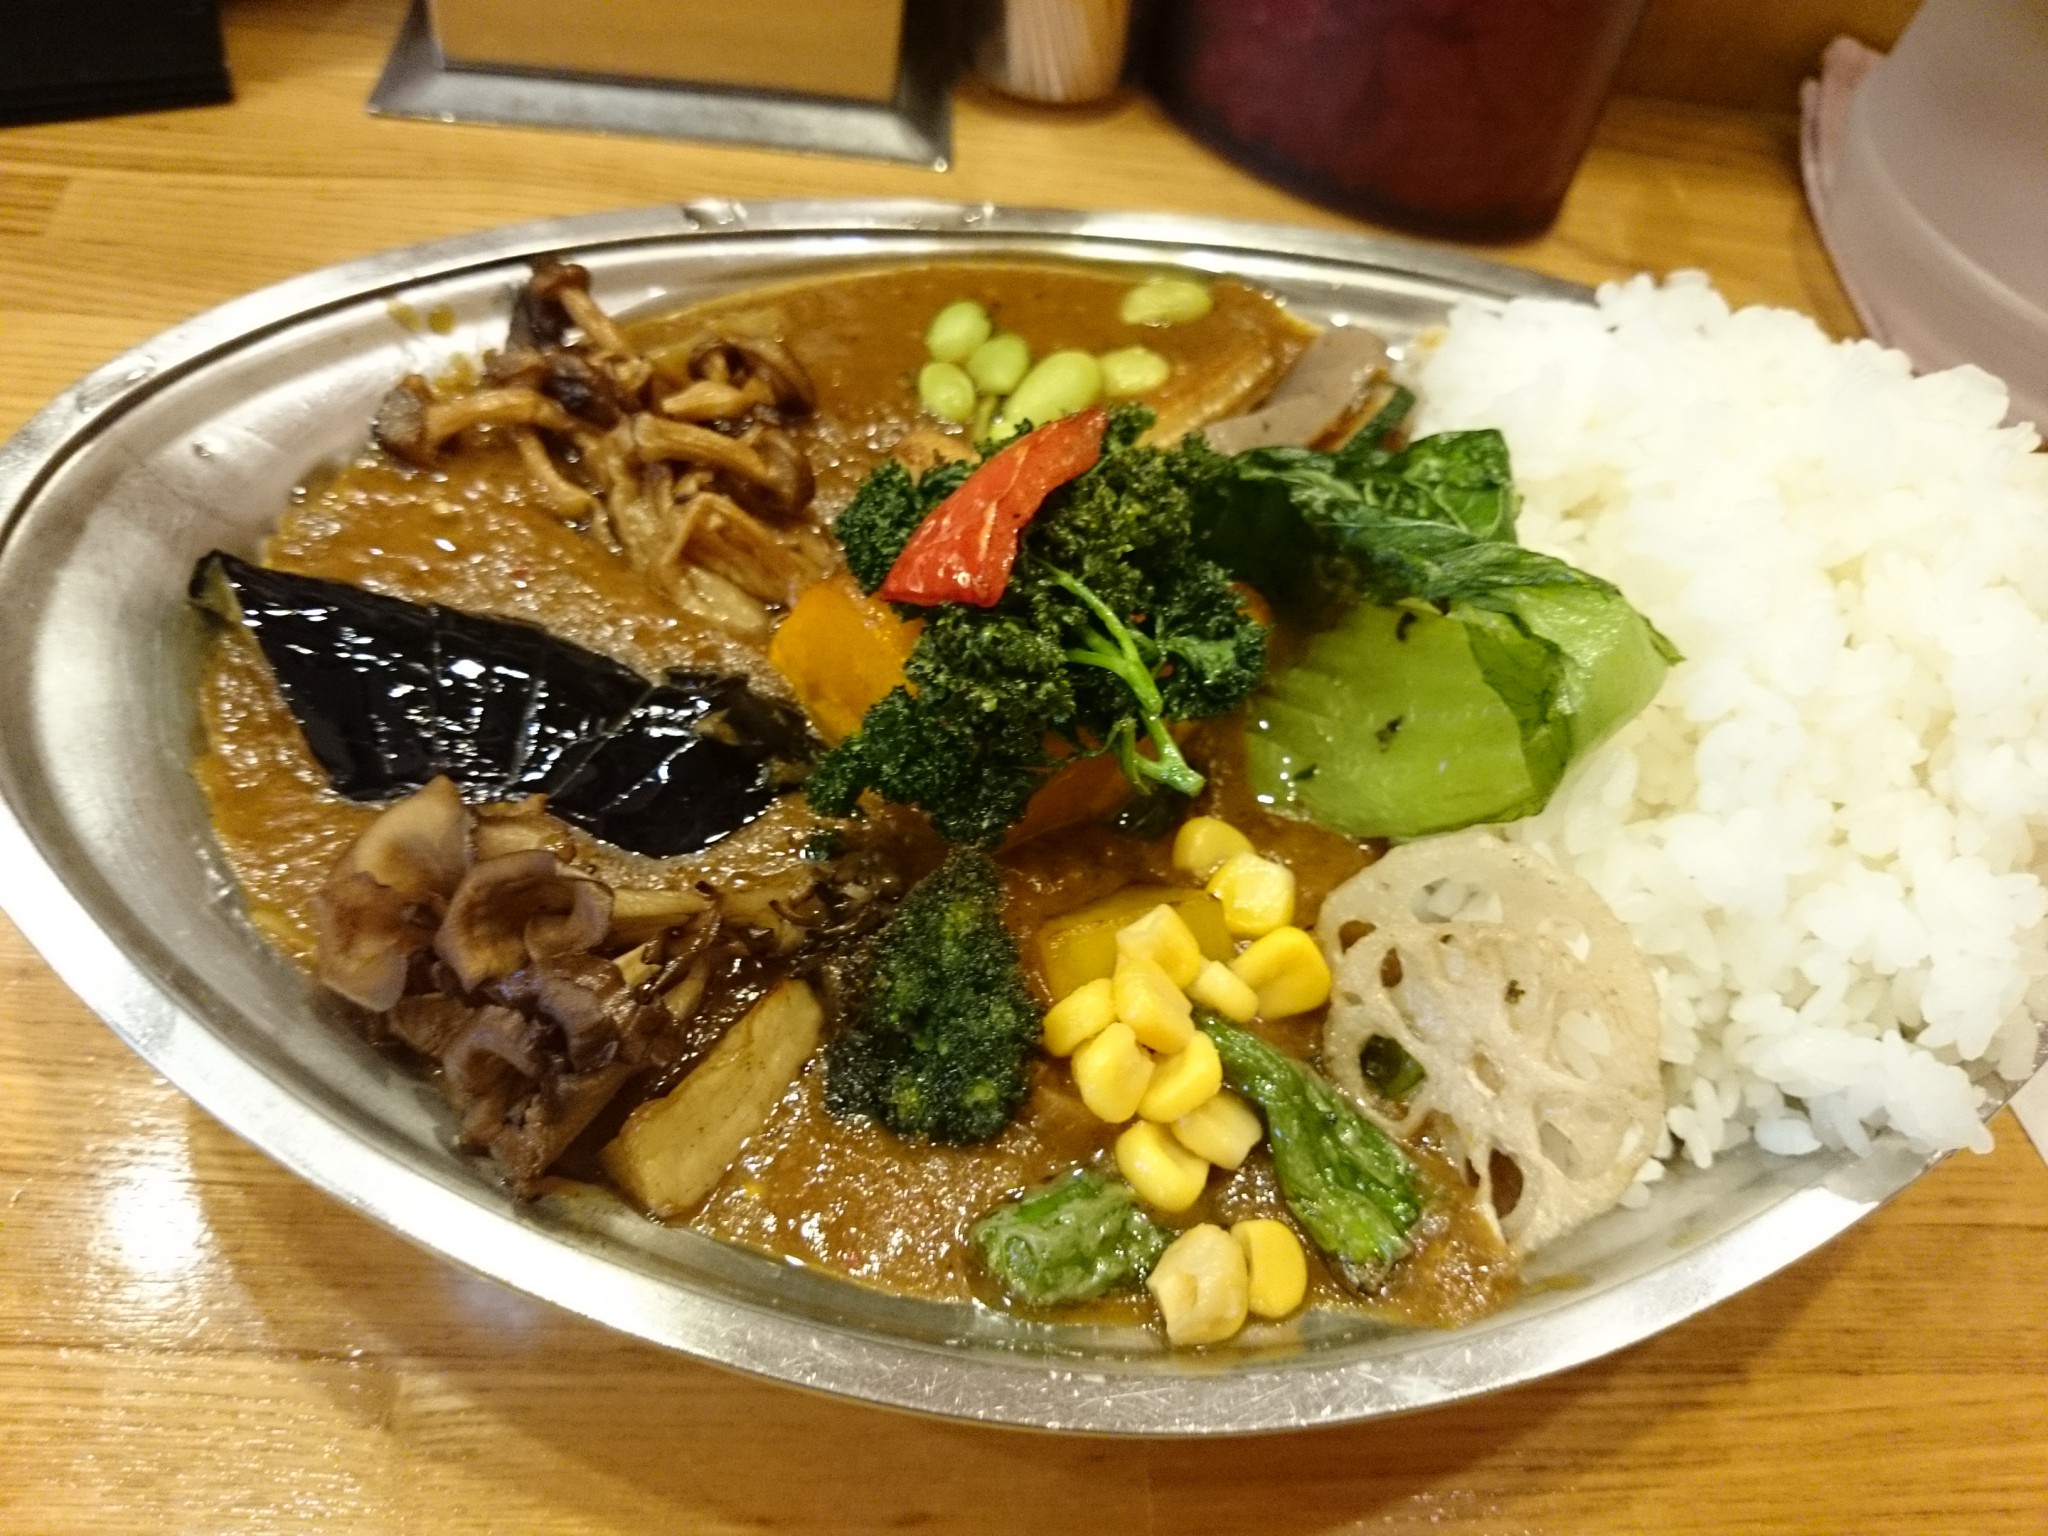 カレーの店「プーさん」@武蔵小金井 スパイスのガッツリ効いた一風変わった野菜カレーをいただく。